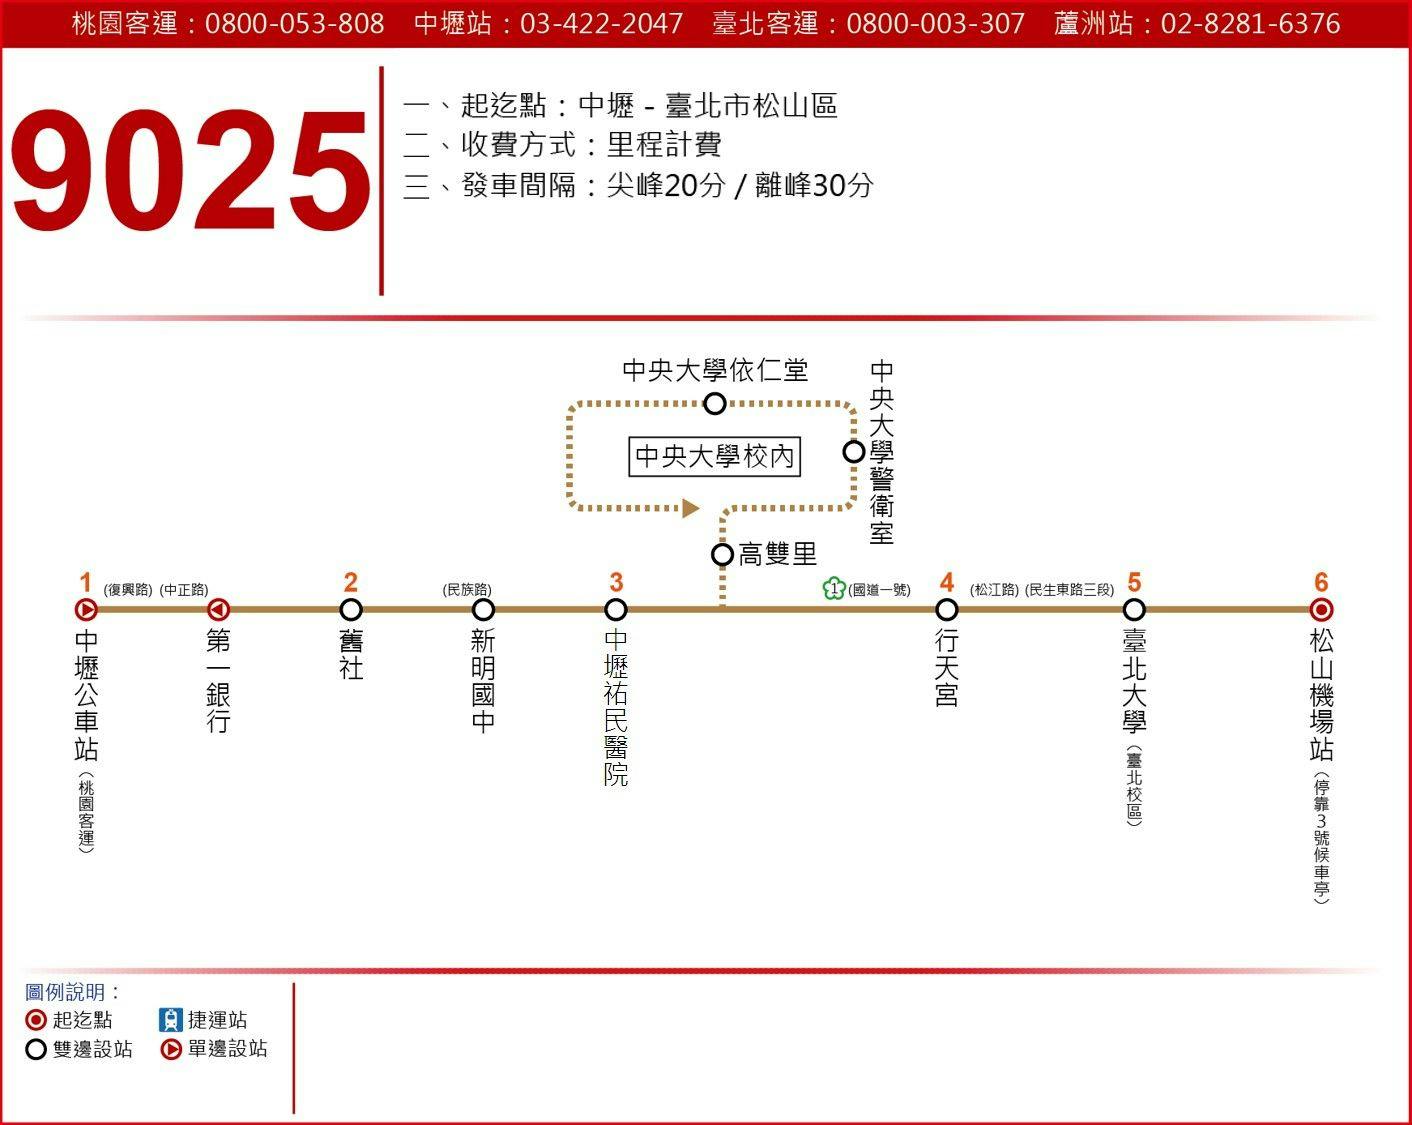 9025Route Map-Taoyuan Bus